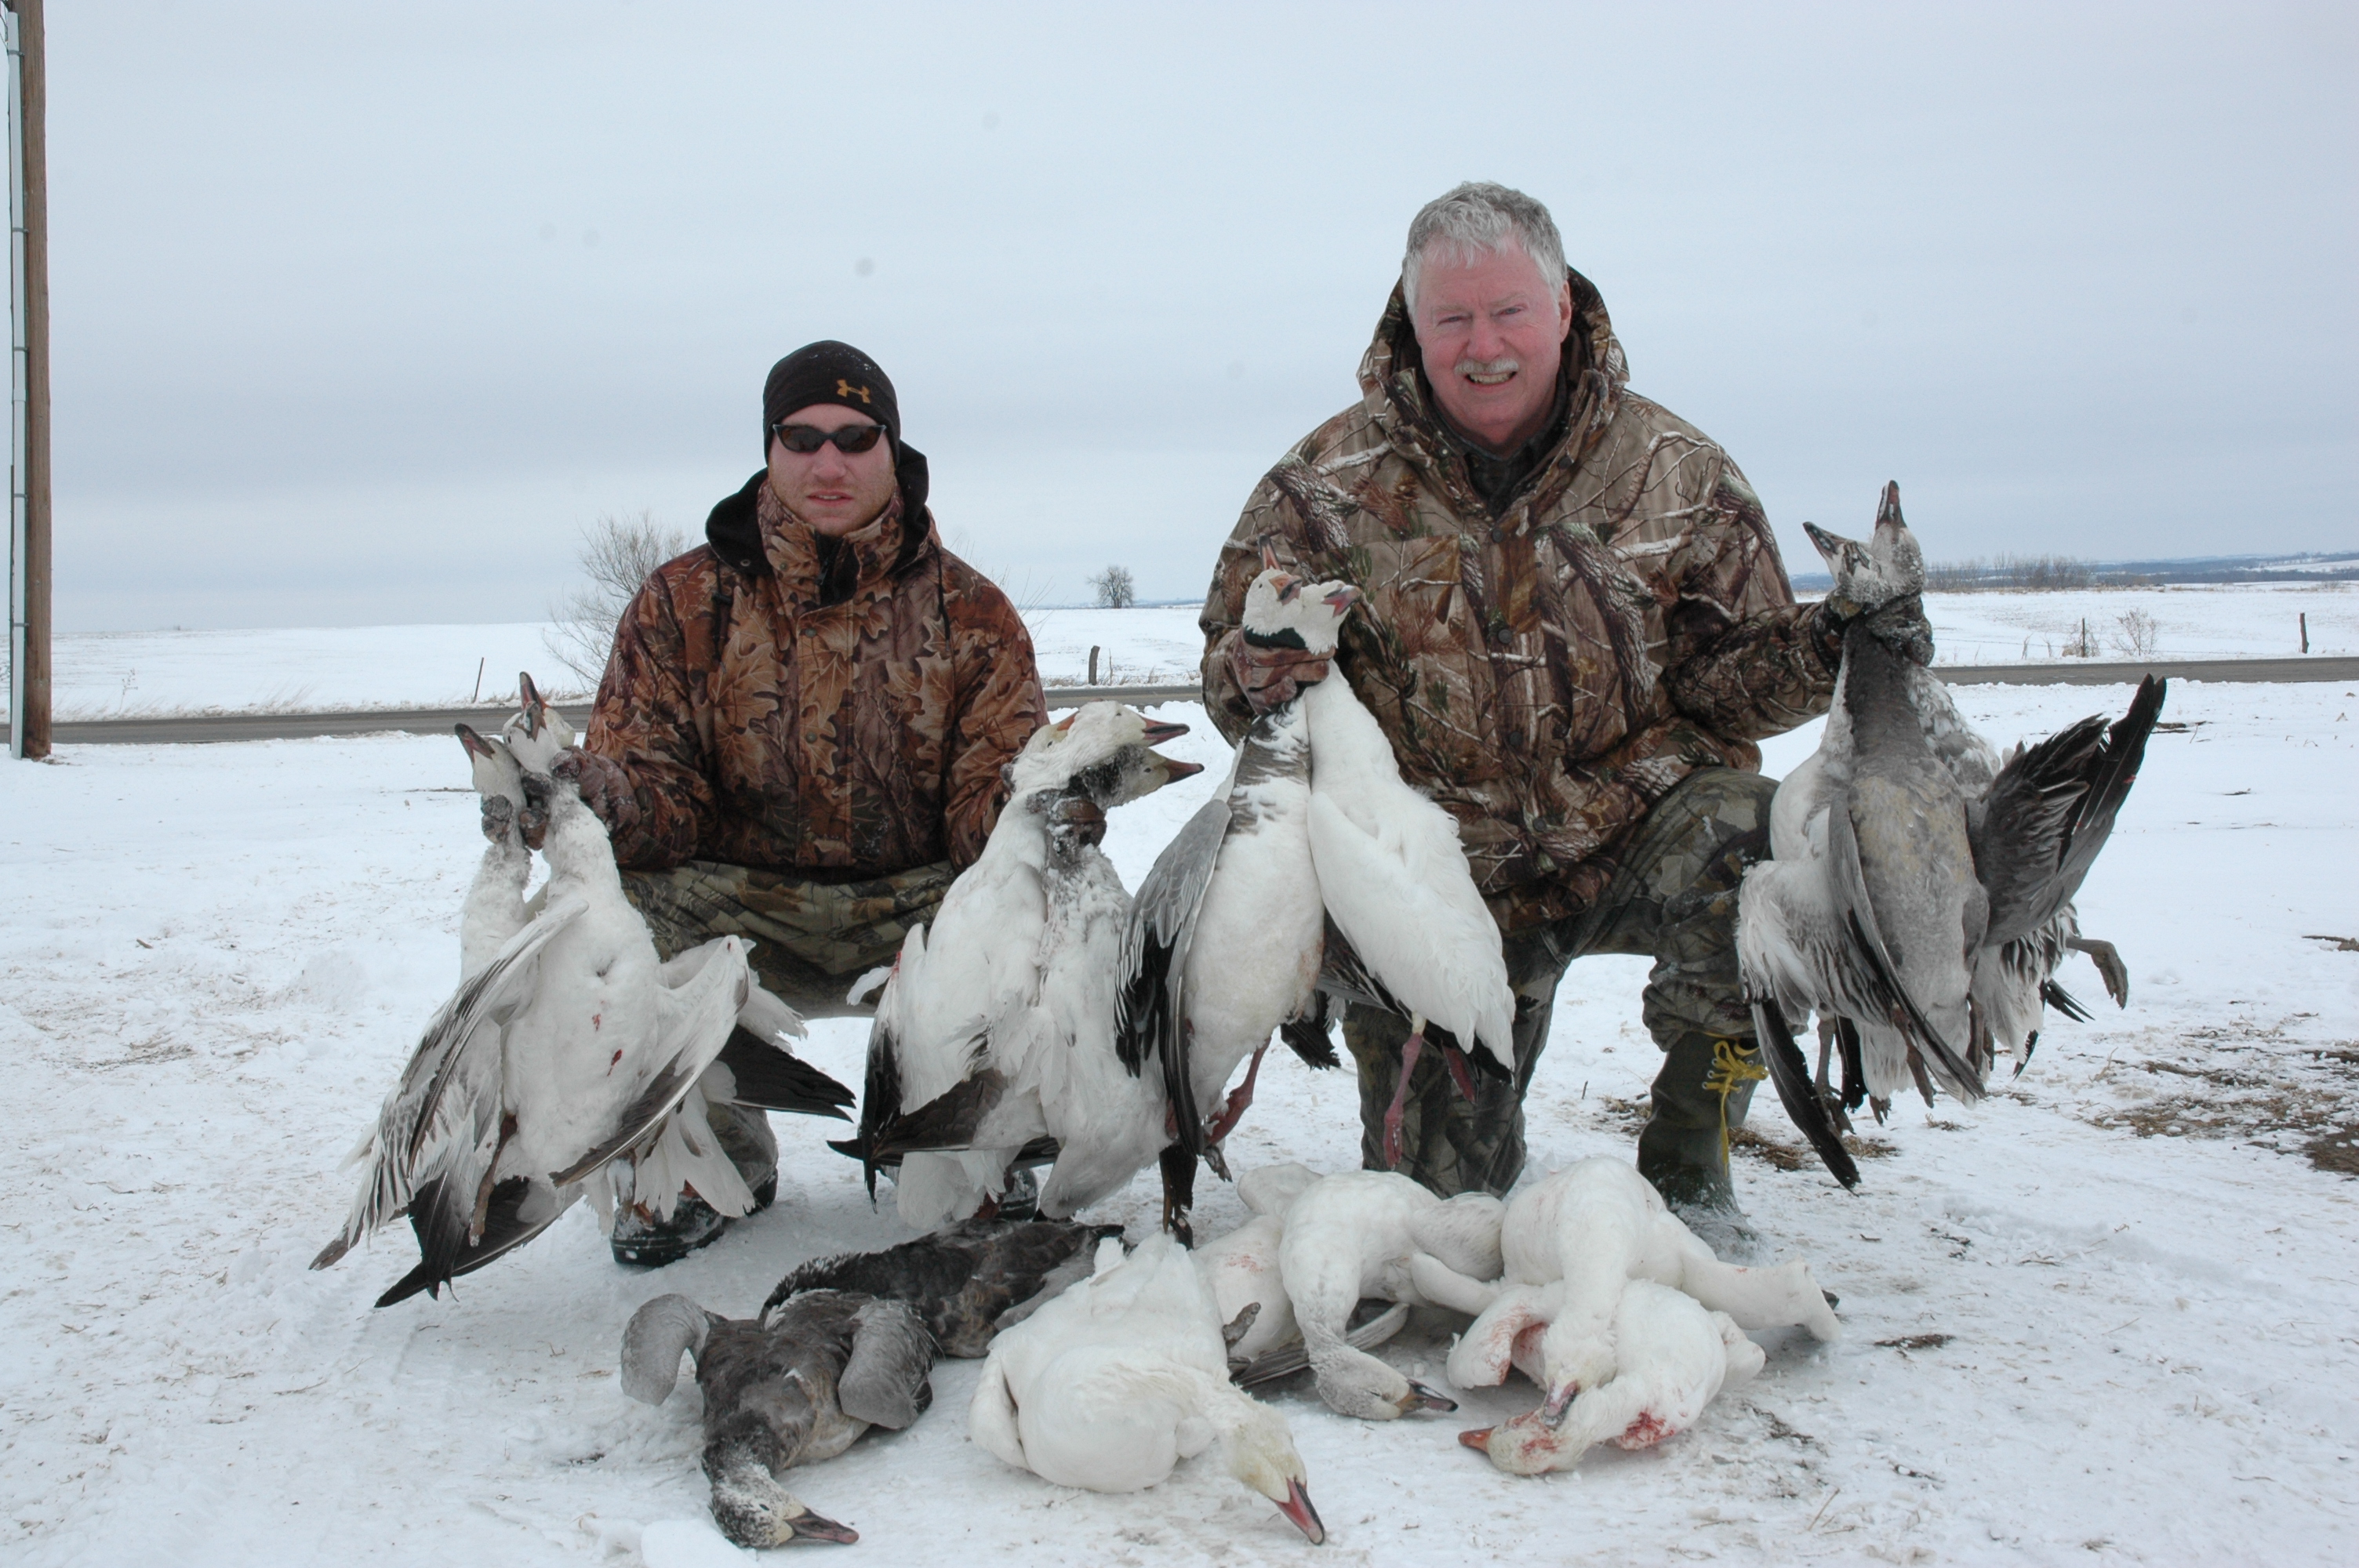 Spring Snow Goose Hunting - Mound City, Missouri